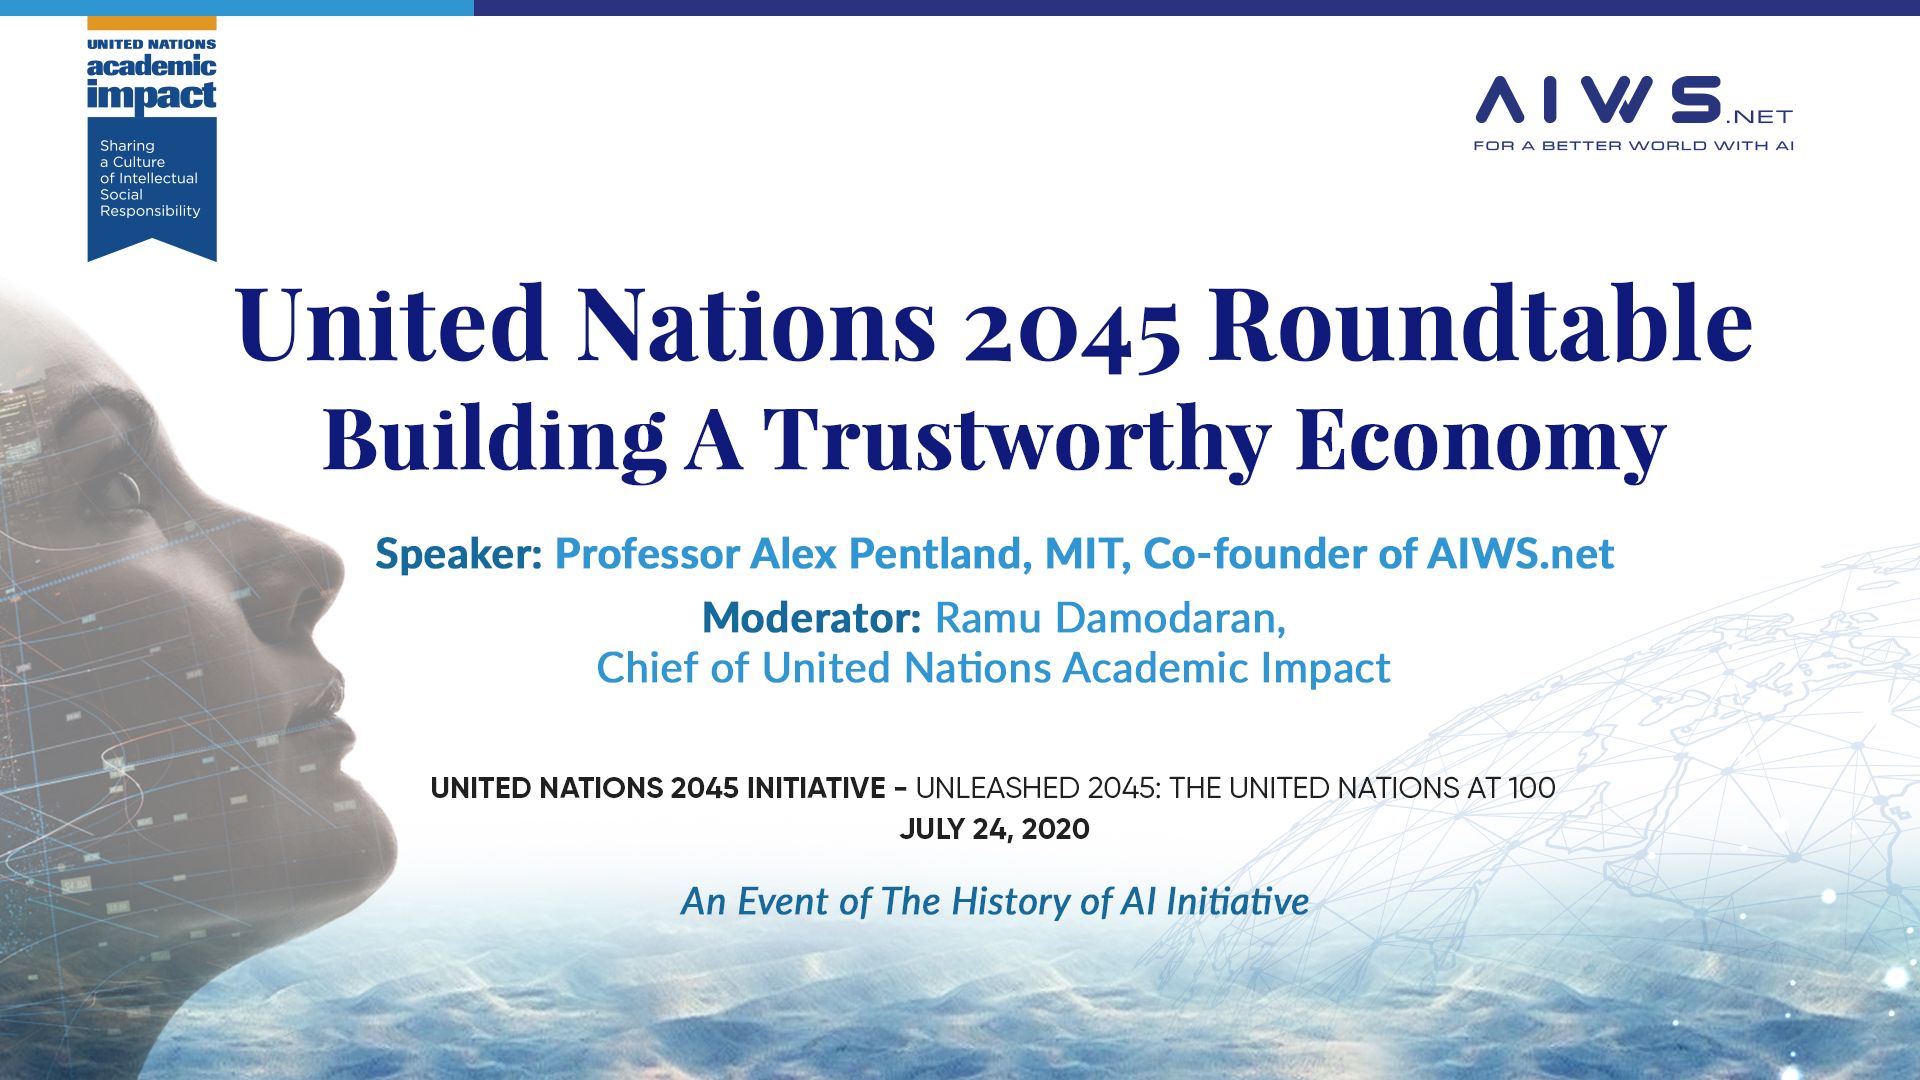 UN2045: Building a Trustworthy Economy